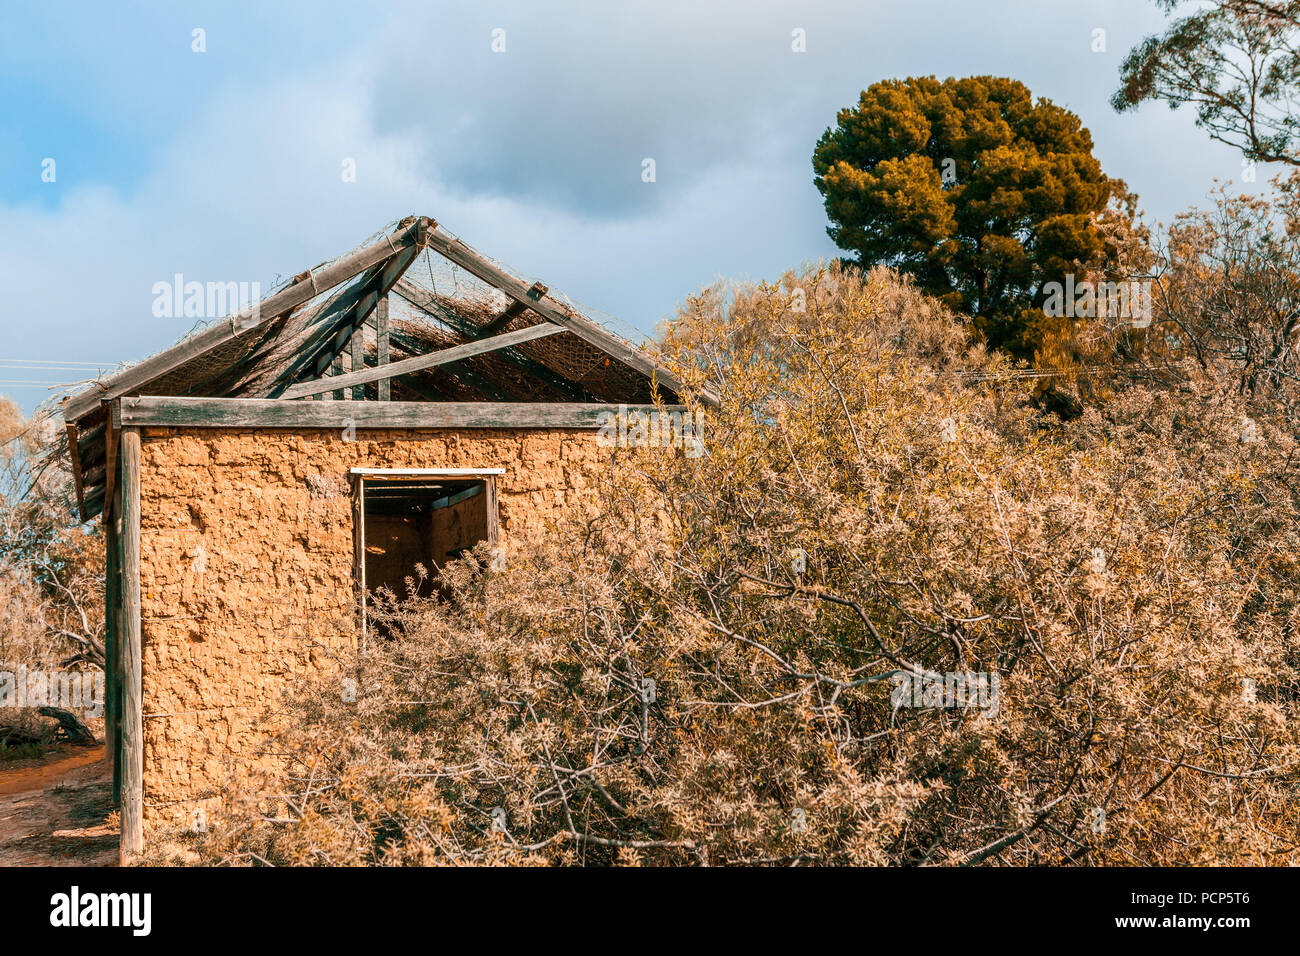 Tribal petite hutte de terre dans l'outback australien Banque D'Images